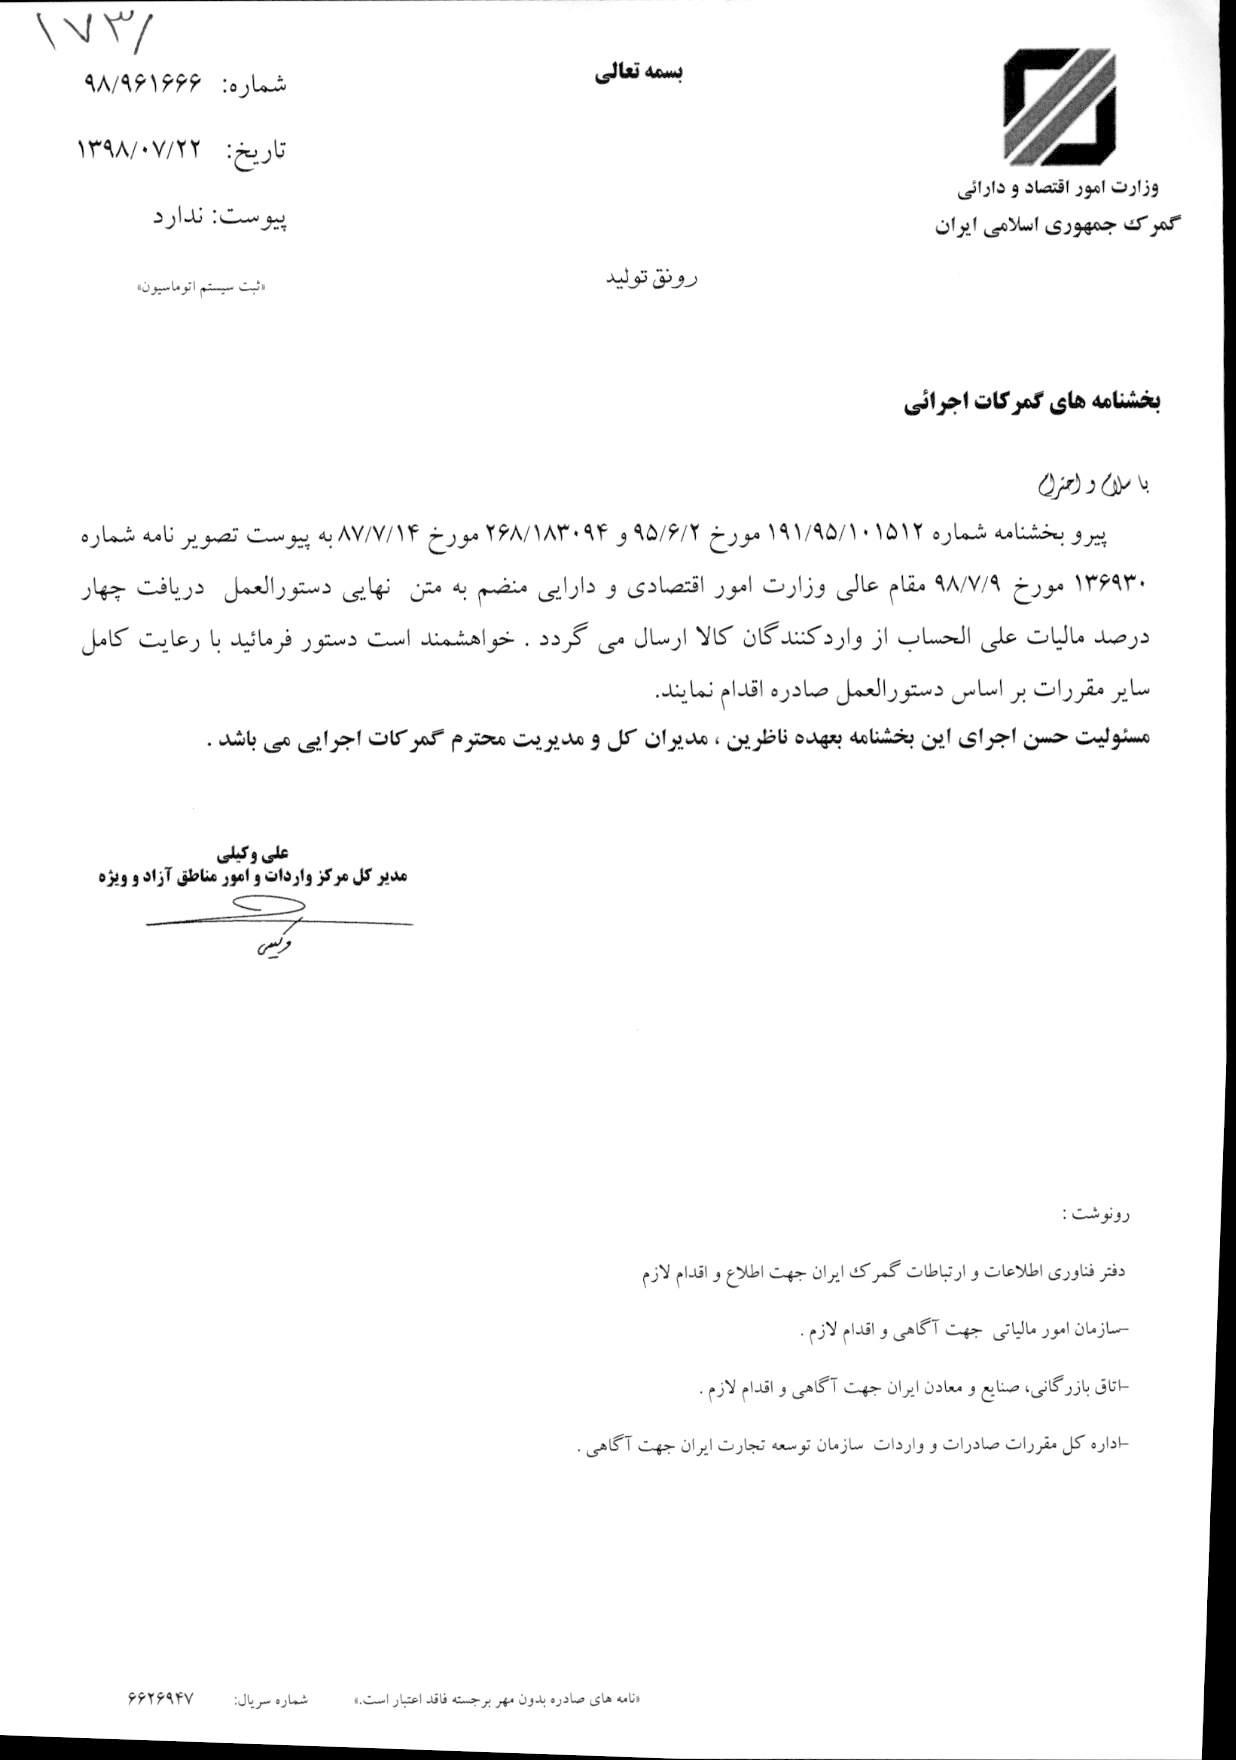 بخشنامه دستورالعمل دریافت چهار درصد مالیات علی الحساب از واردکنندگان کالا 1398/07/22